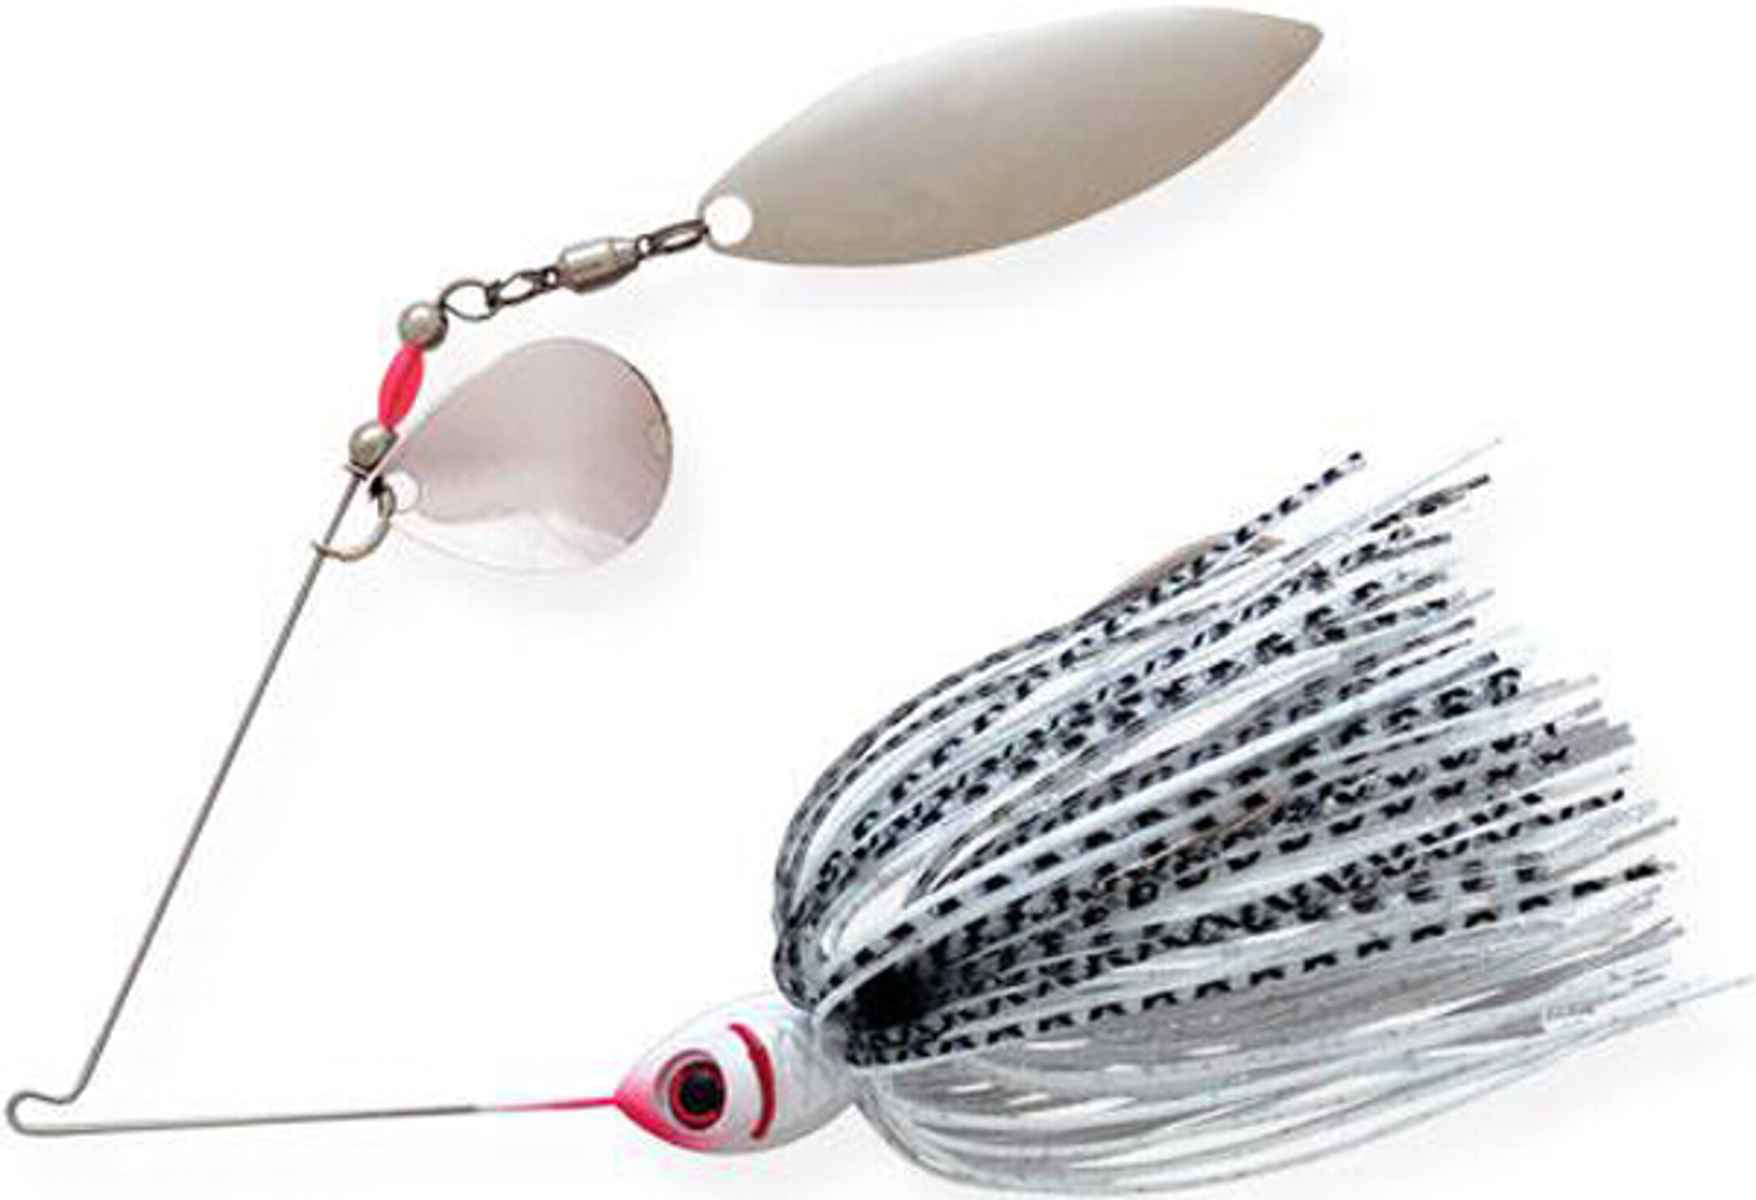 Colorado Spinner Blades for Lure Making Kit, 255pcs DIY Fishing